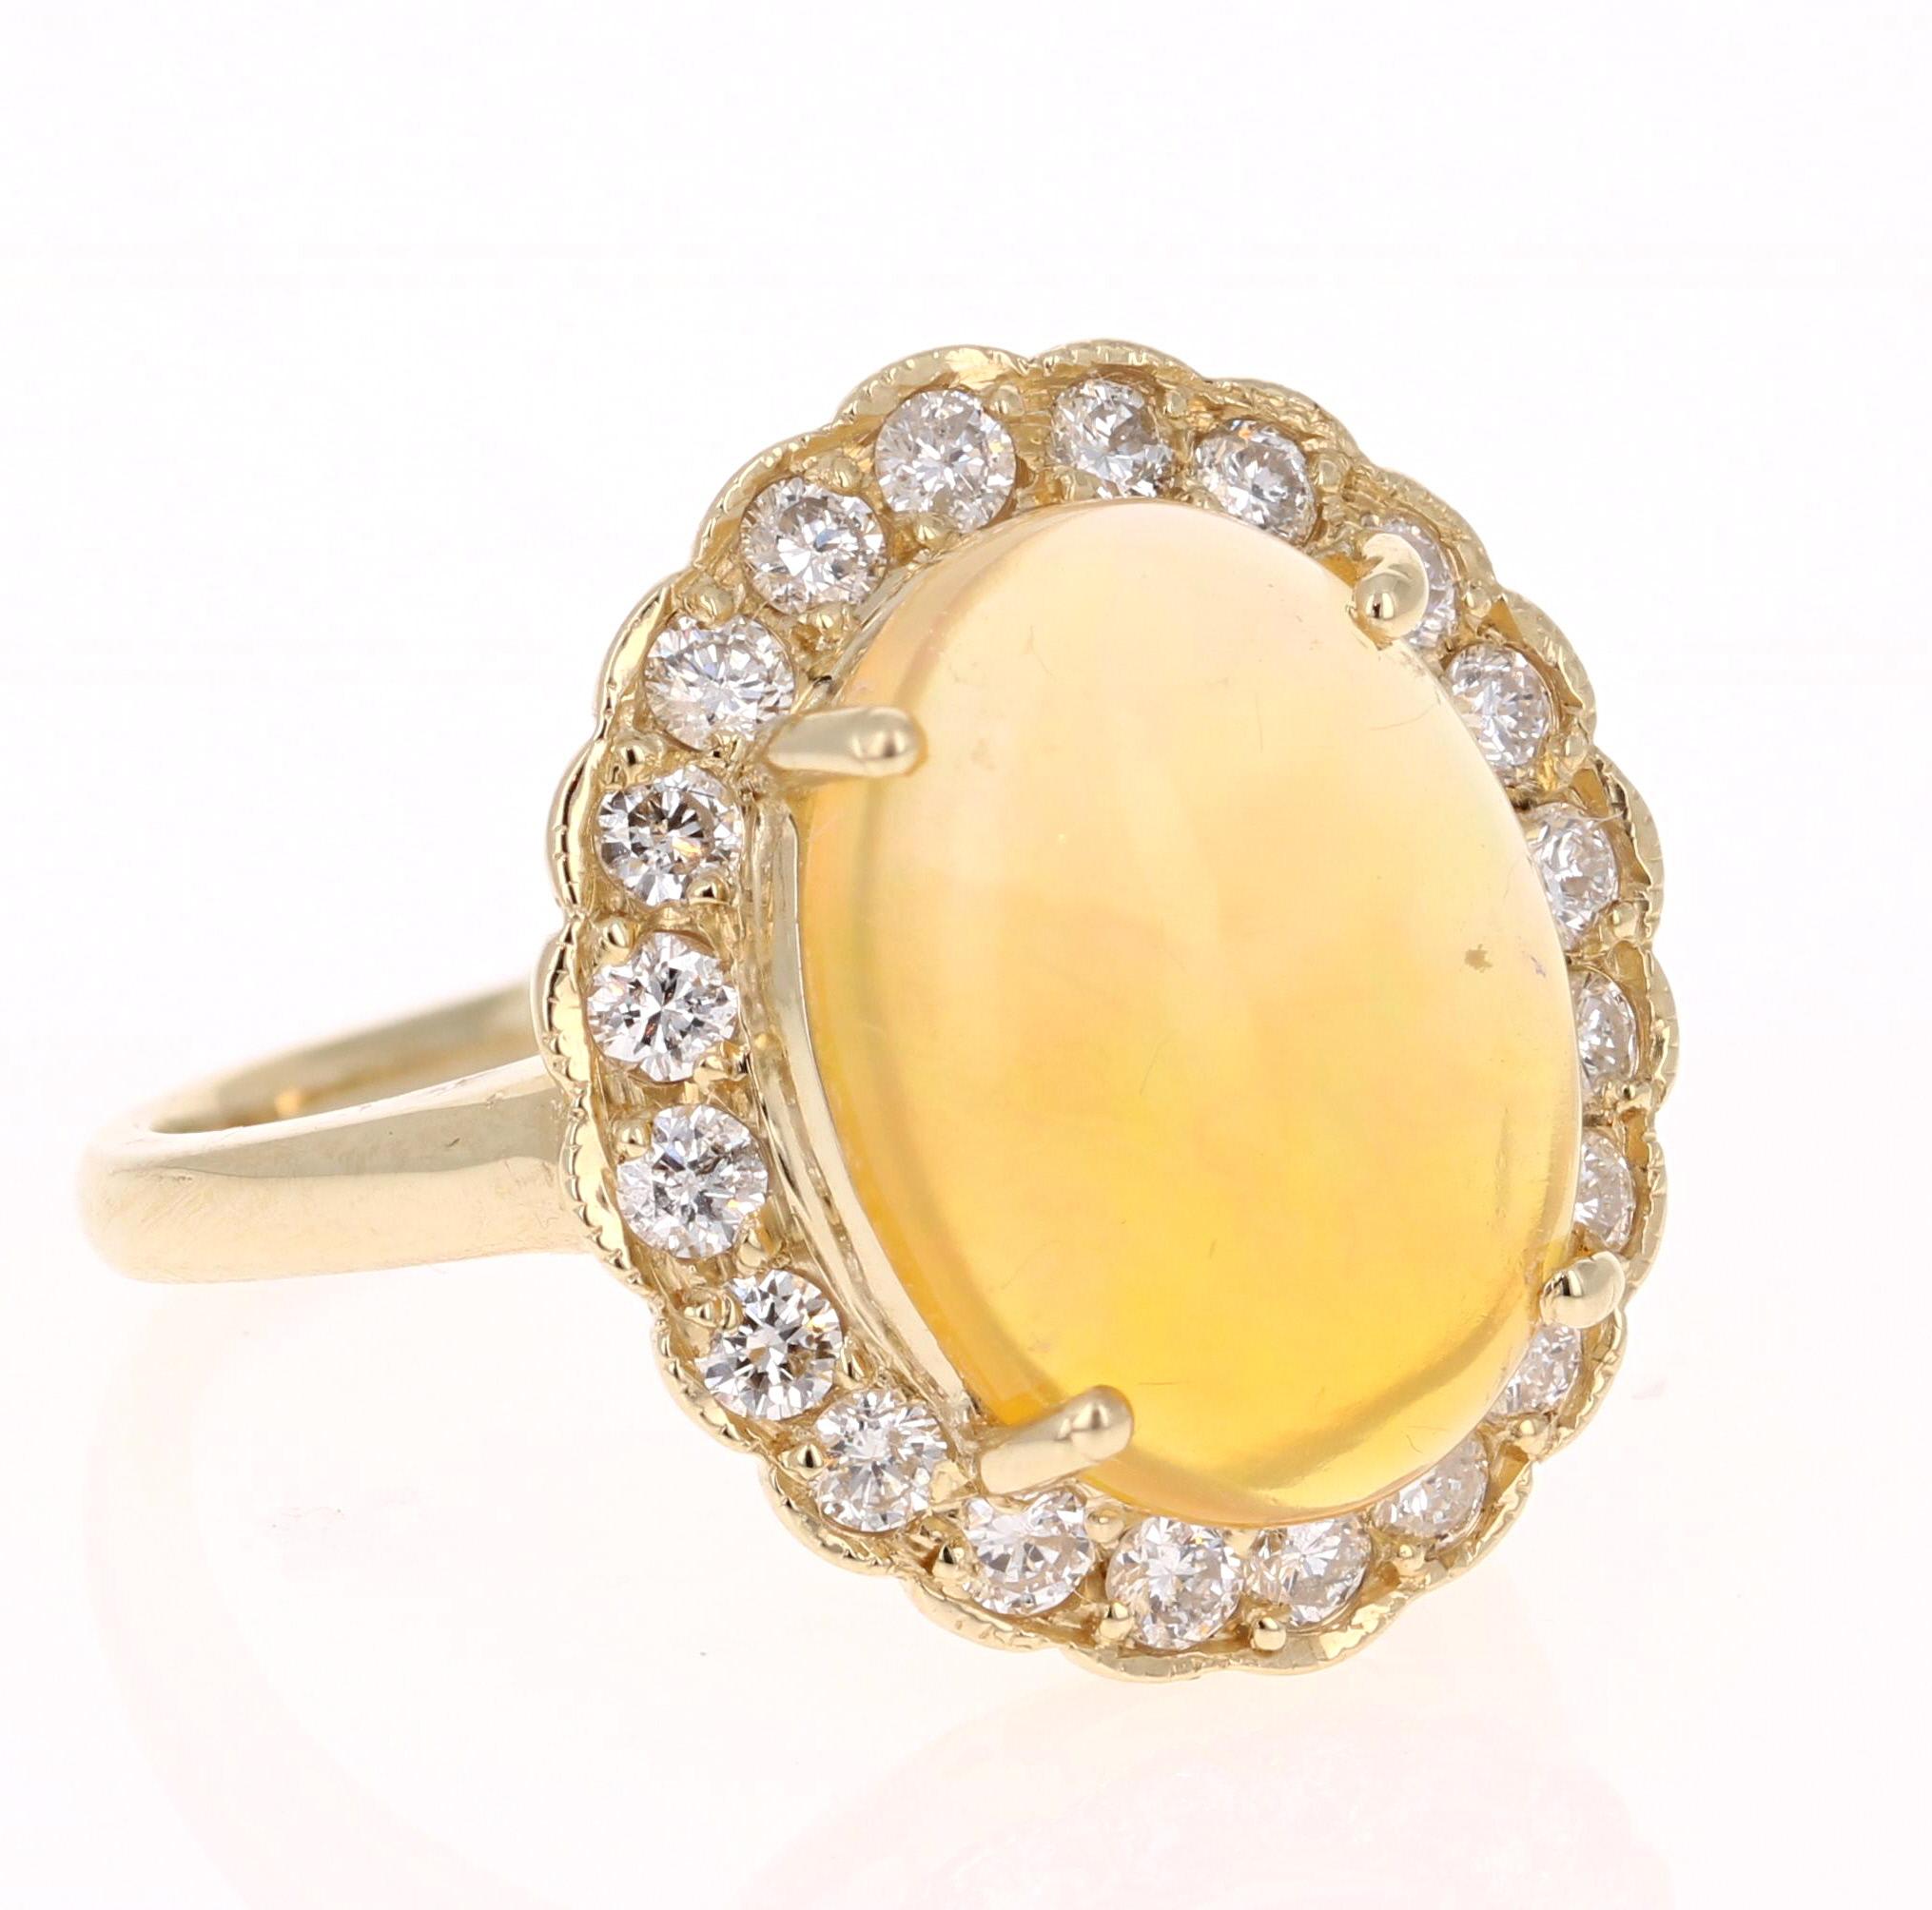 Atemberaubender und extrem opulenter 3,61 Karat Ovalschliff Opal Diamant Gelbgold Ring!

Der Ovalschliff-Opal in diesem Ring wiegt 3,24 Karat und ist von 20 Diamanten im Rundschliff umgeben, die 0,37 Karat wiegen.  Das Gesamtkaratgewicht dieses